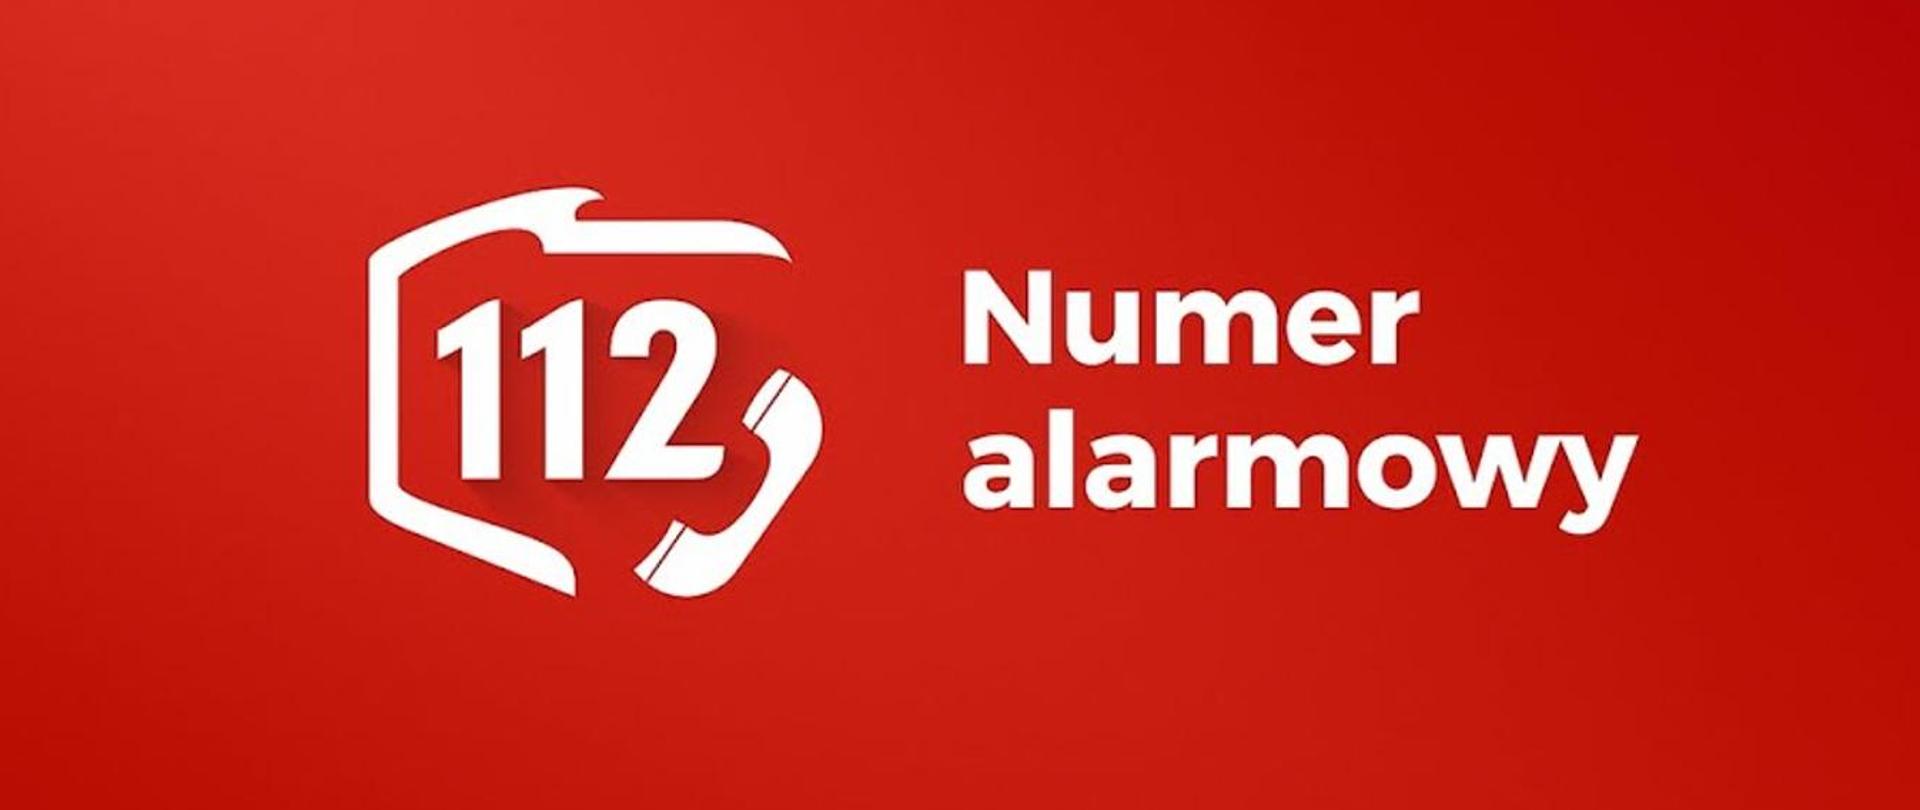 Zdjęcie przedstawia biały napis: 112 Numer alarmowy. Napis na czerwonym tle.